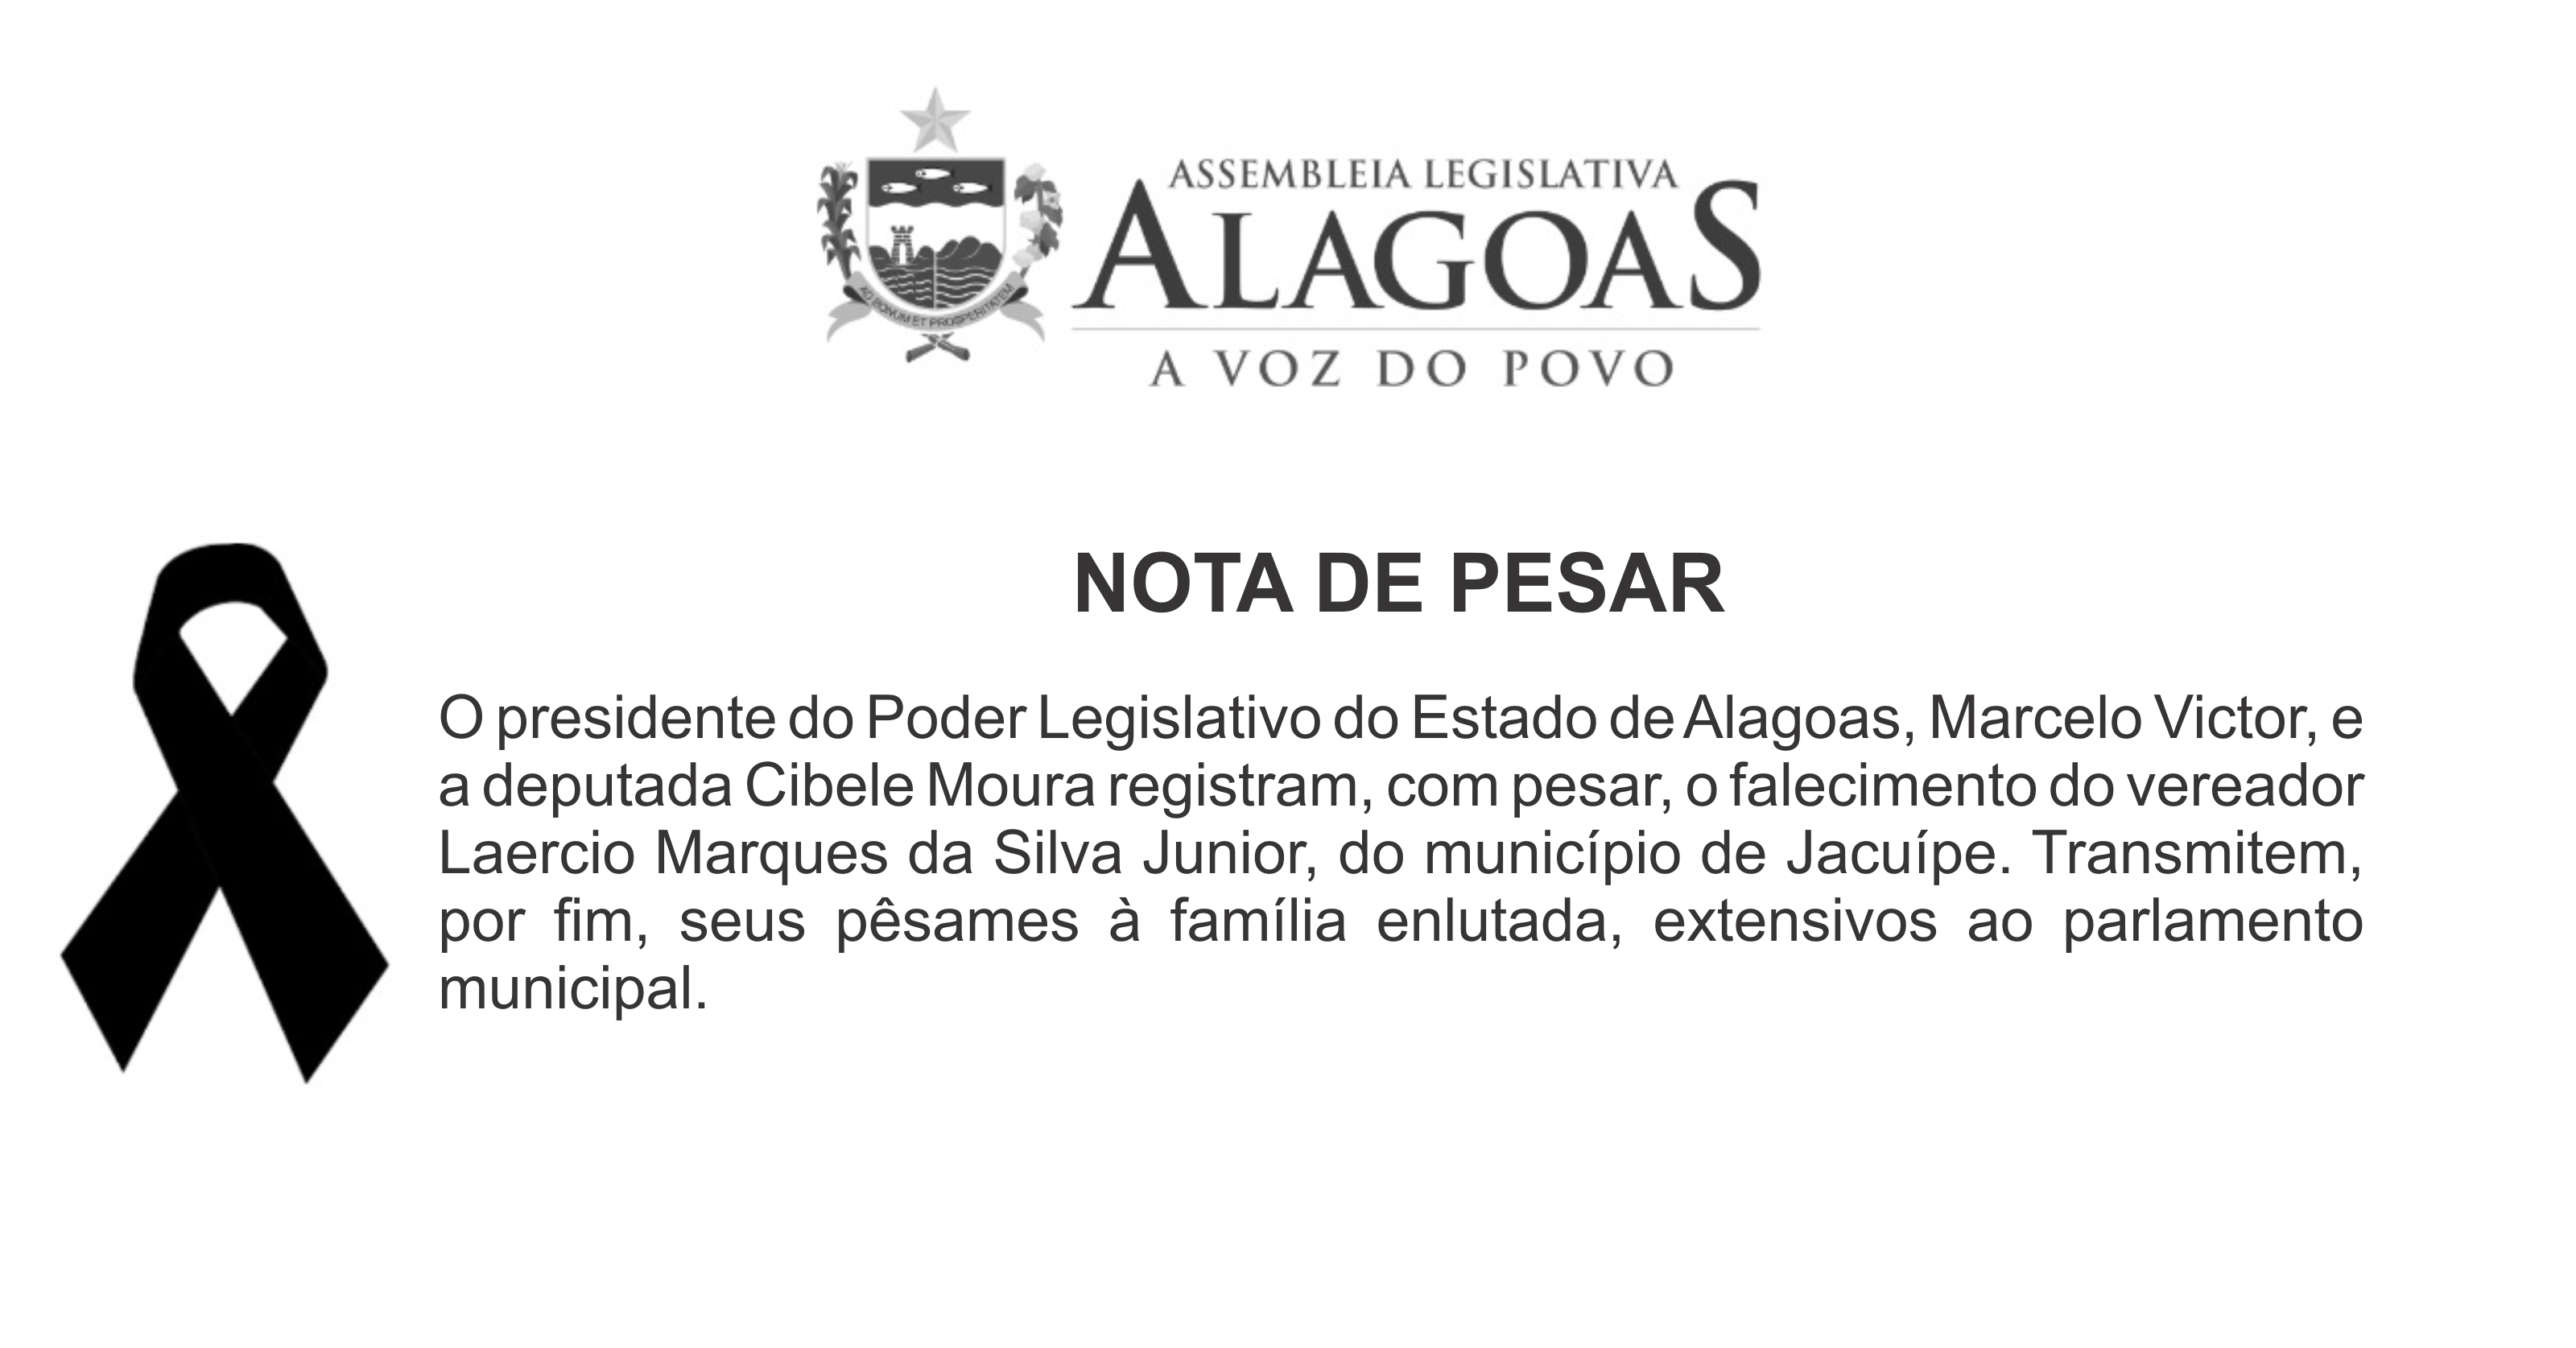 Assembleia emite Nota de Pesar pelo falecimento de vereador de Jacuípe